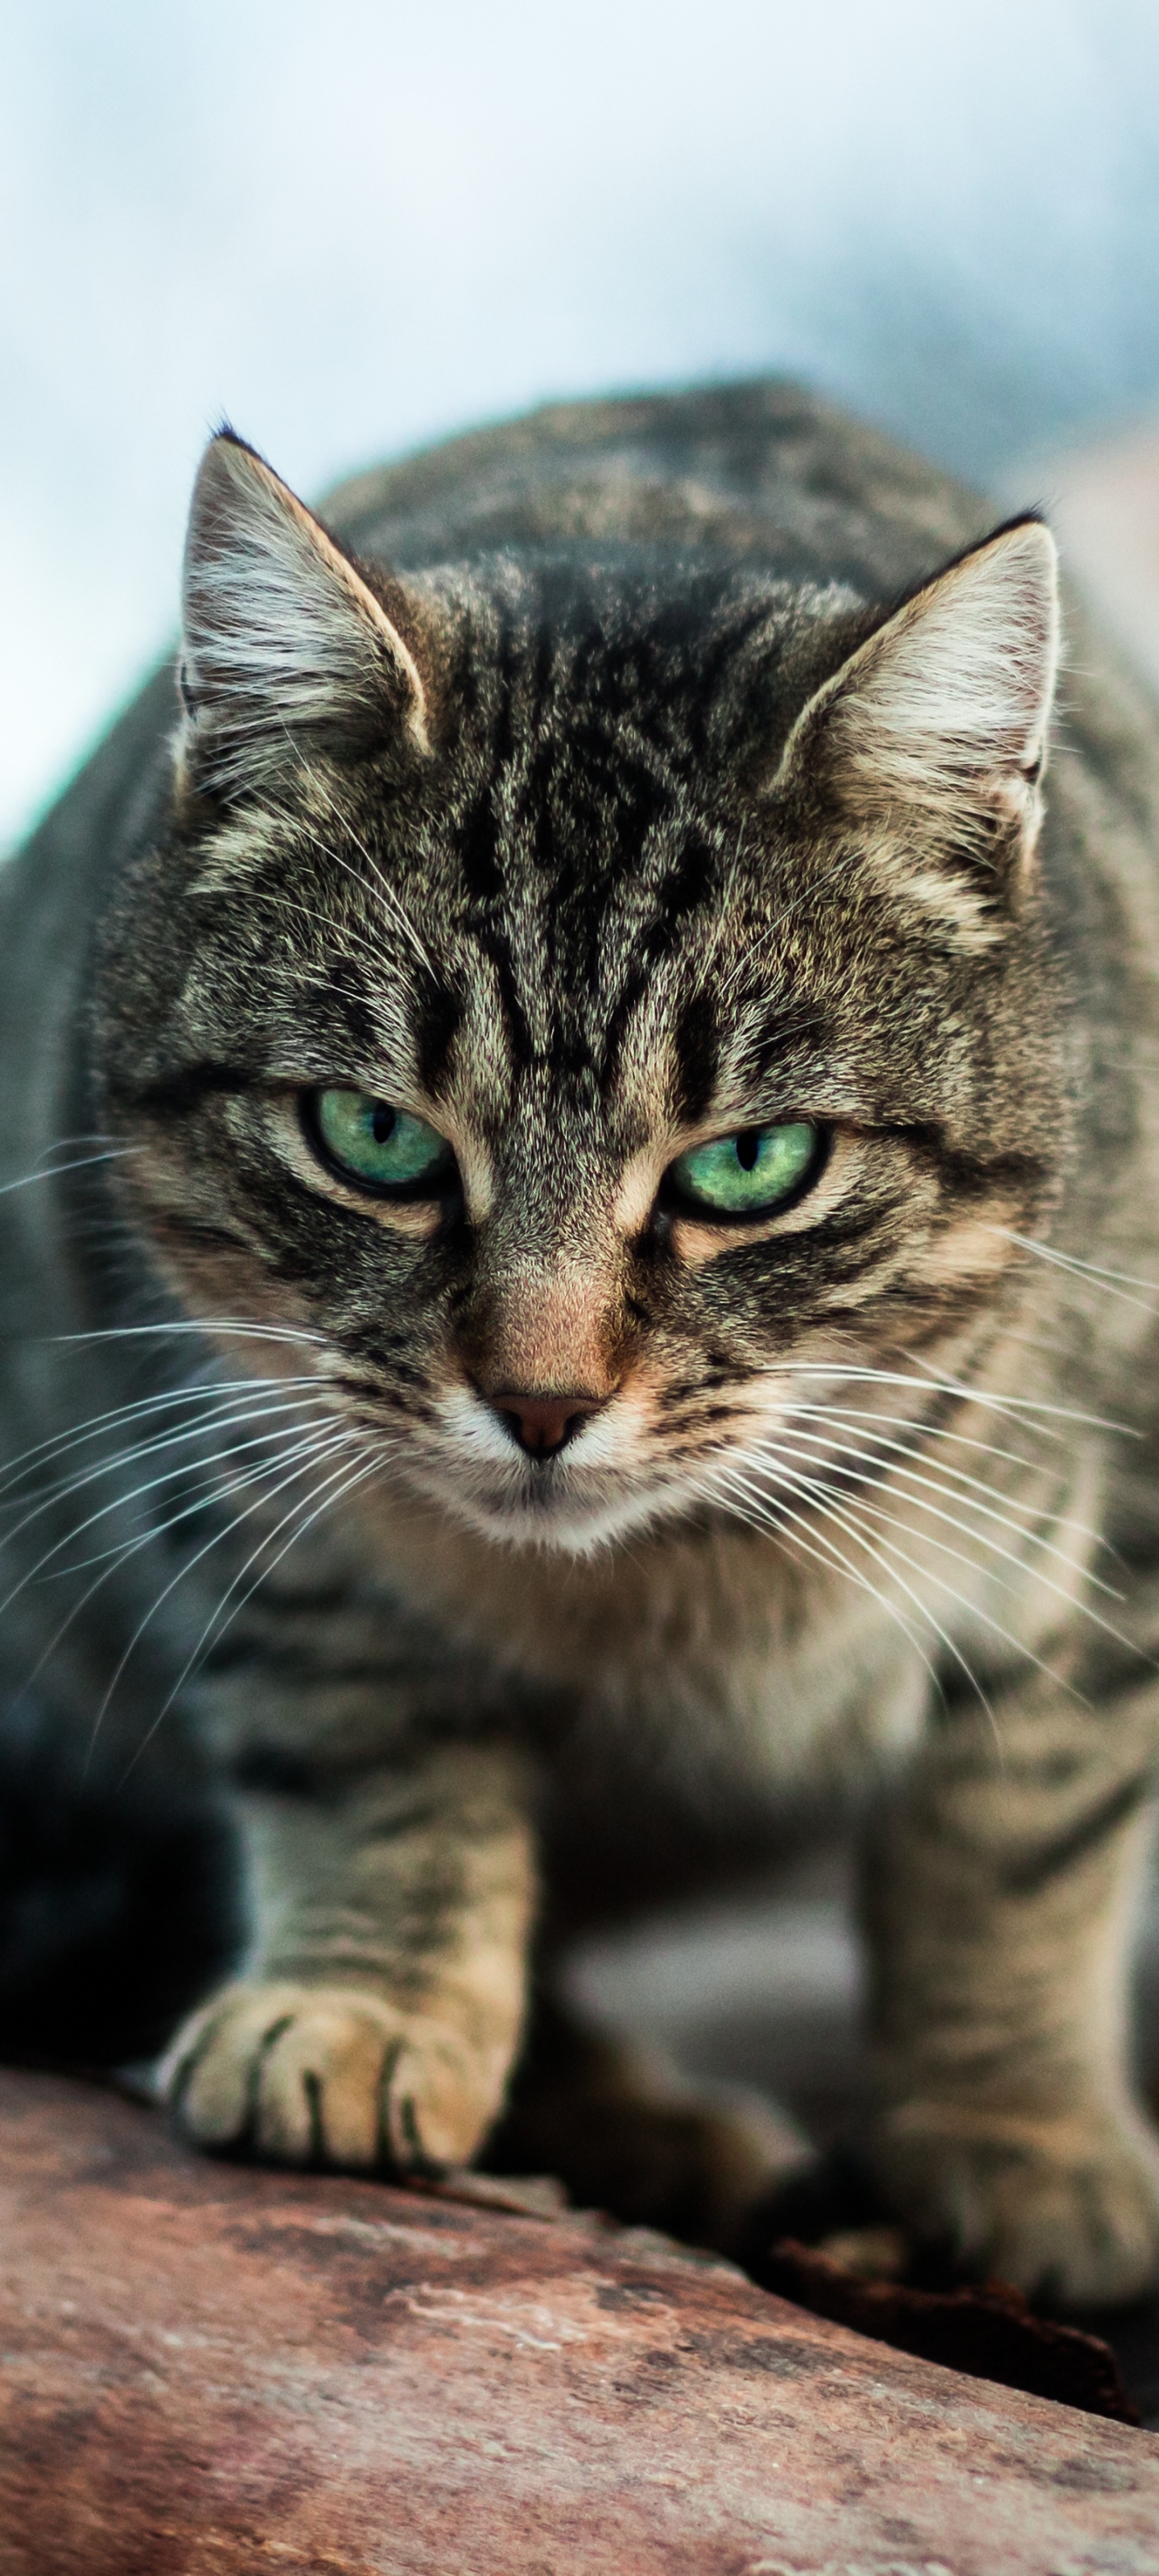 Descarga gratuita de fondo de pantalla para móvil de Animales, Gatos, Gato, Ojos Verdes, Mirar Fijamente.